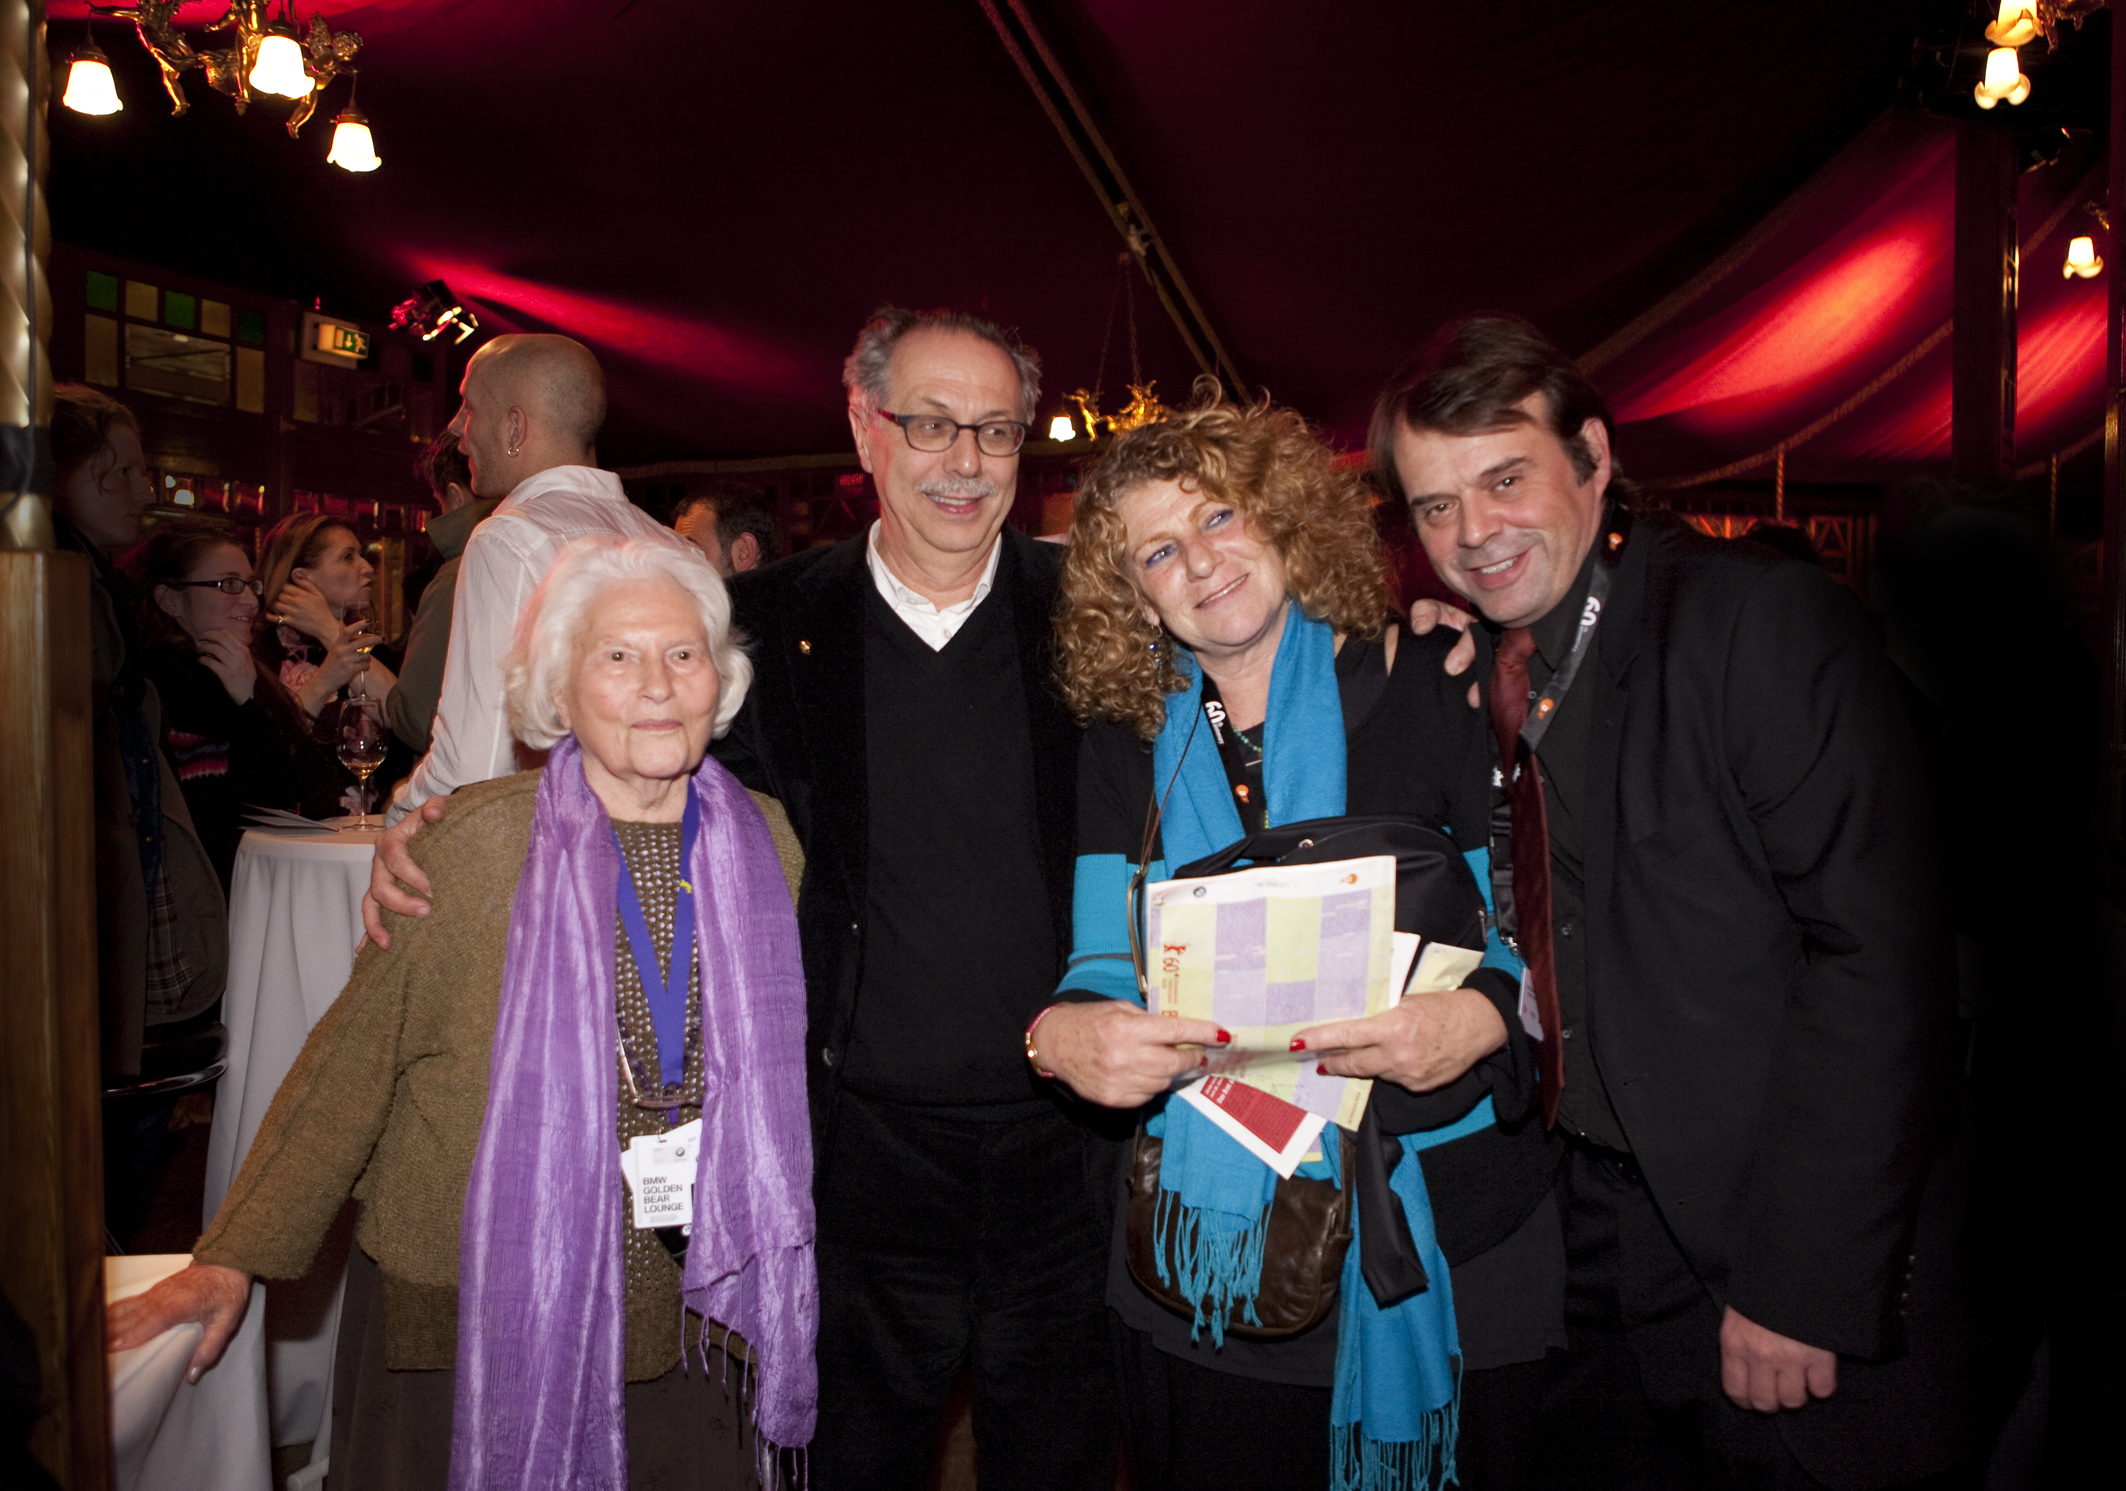 With Lia van Leer and Dieter Kosslick, Berlin Film Festival 2010.